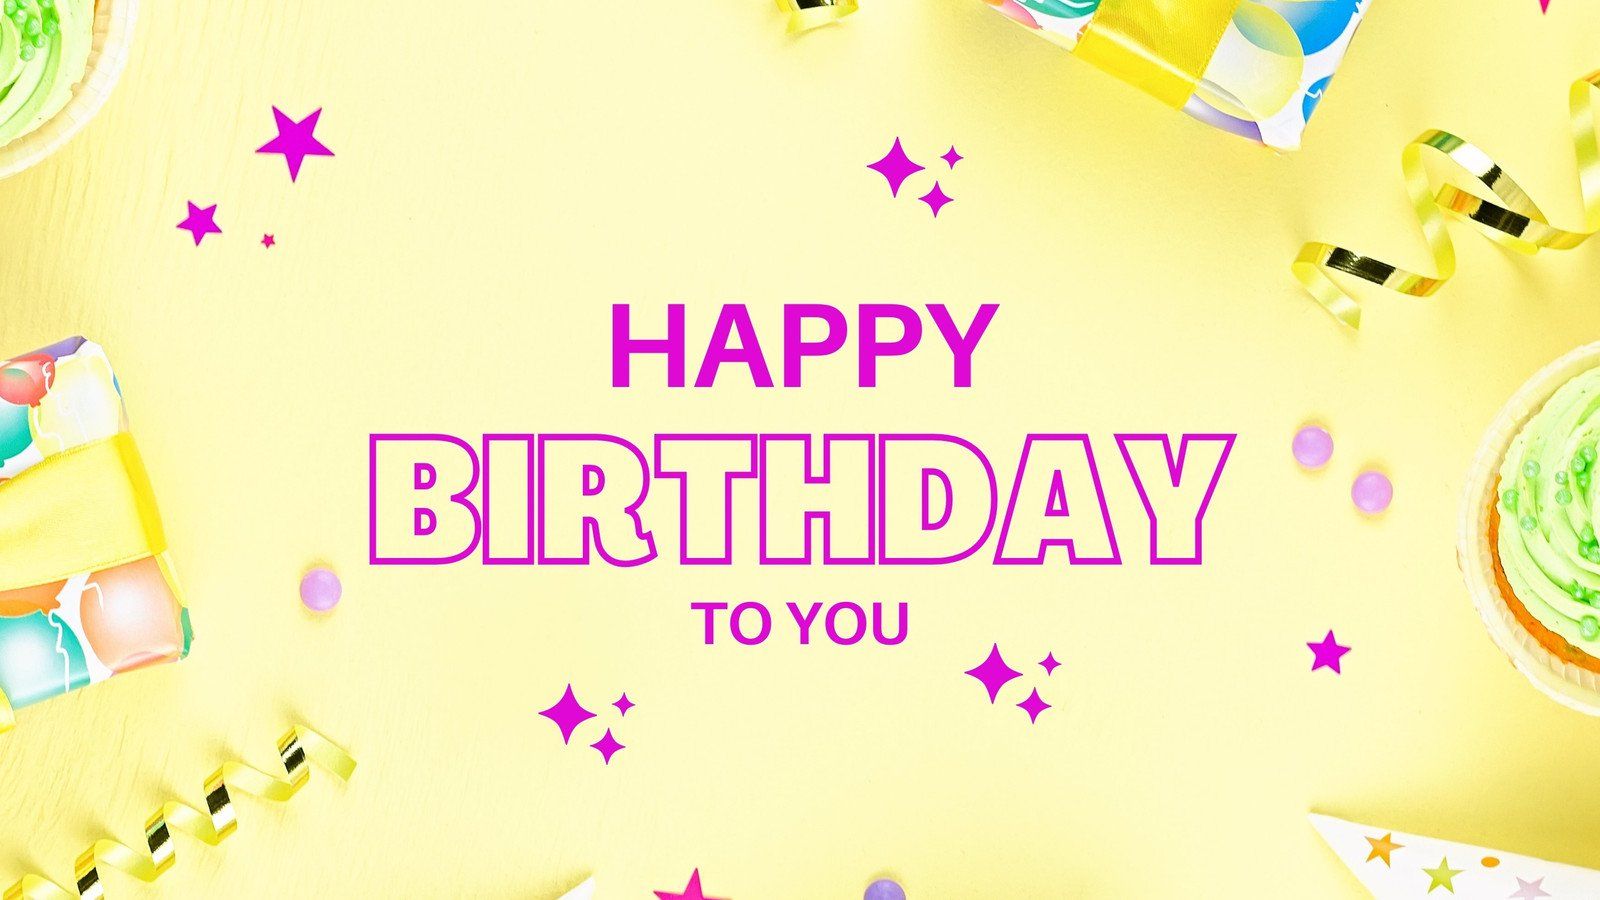 Happy birthday to you - Birthday